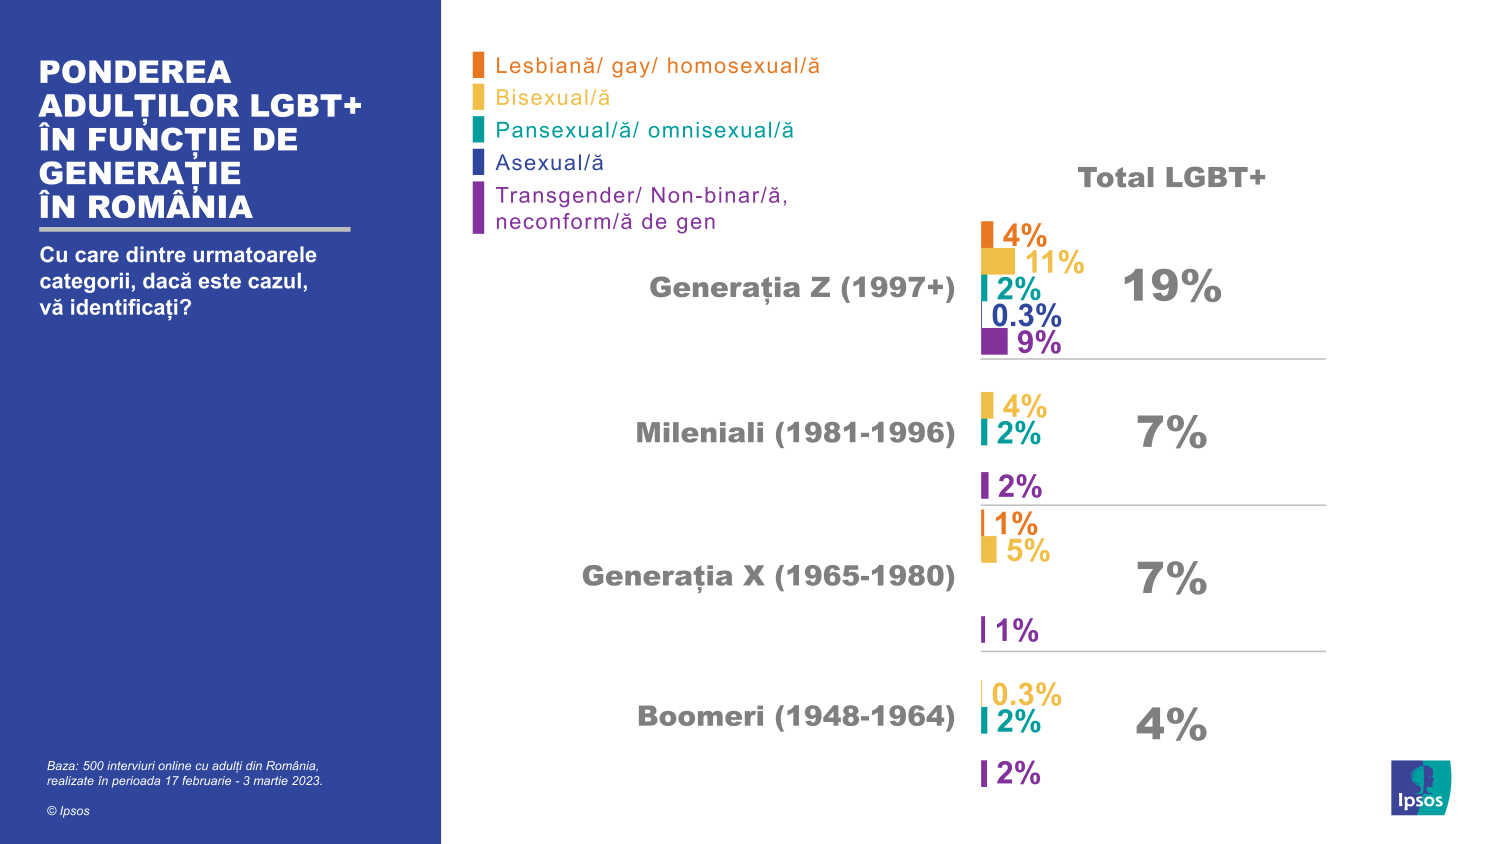 Infografic Ipsos 02_Ponderea adultilor LGBT+ in functie de generatie in Romania